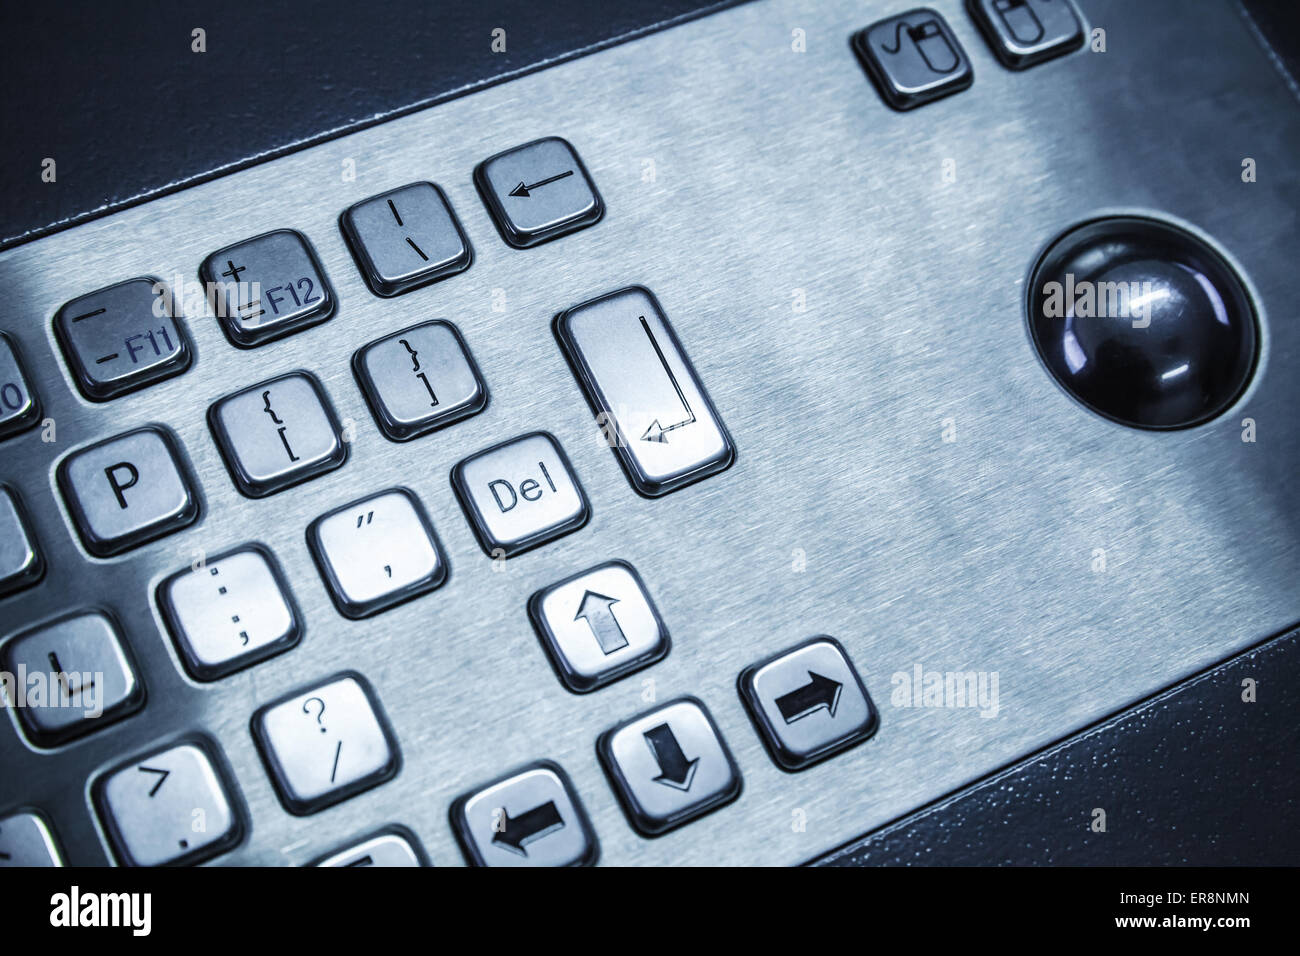 Industrielle Tastatur aus Stahl gefertigt, mit einem Trackball, blau  getönten Foto, selektiven Fokus mit flachen DOF Stockfotografie - Alamy